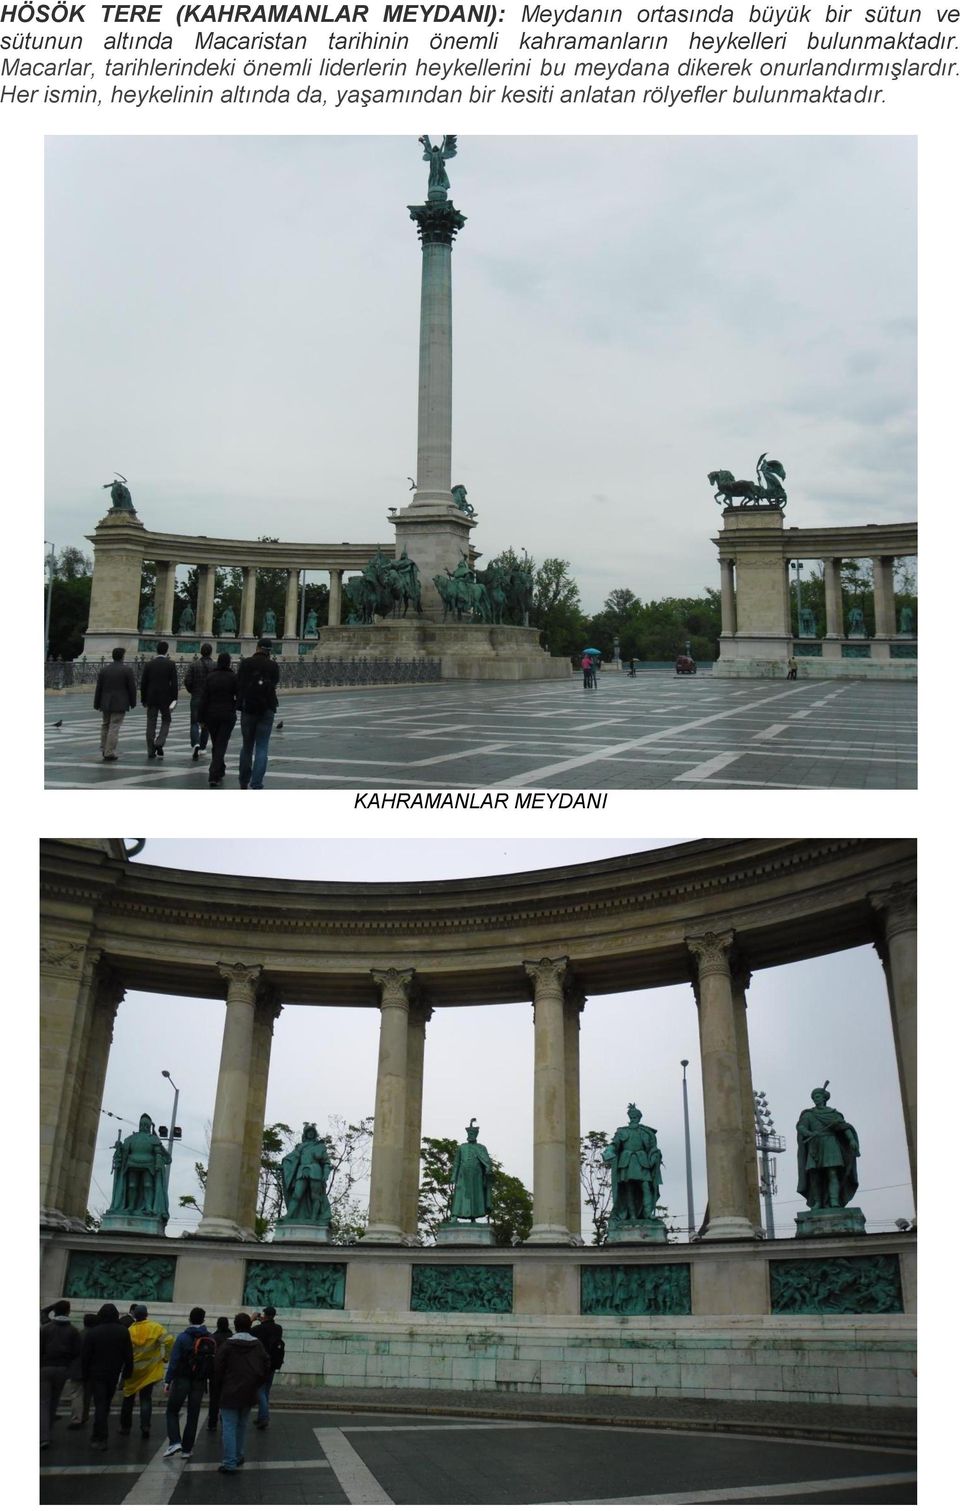 Macarlar, tarihlerindeki önemli liderlerin heykellerini bu meydana dikerek